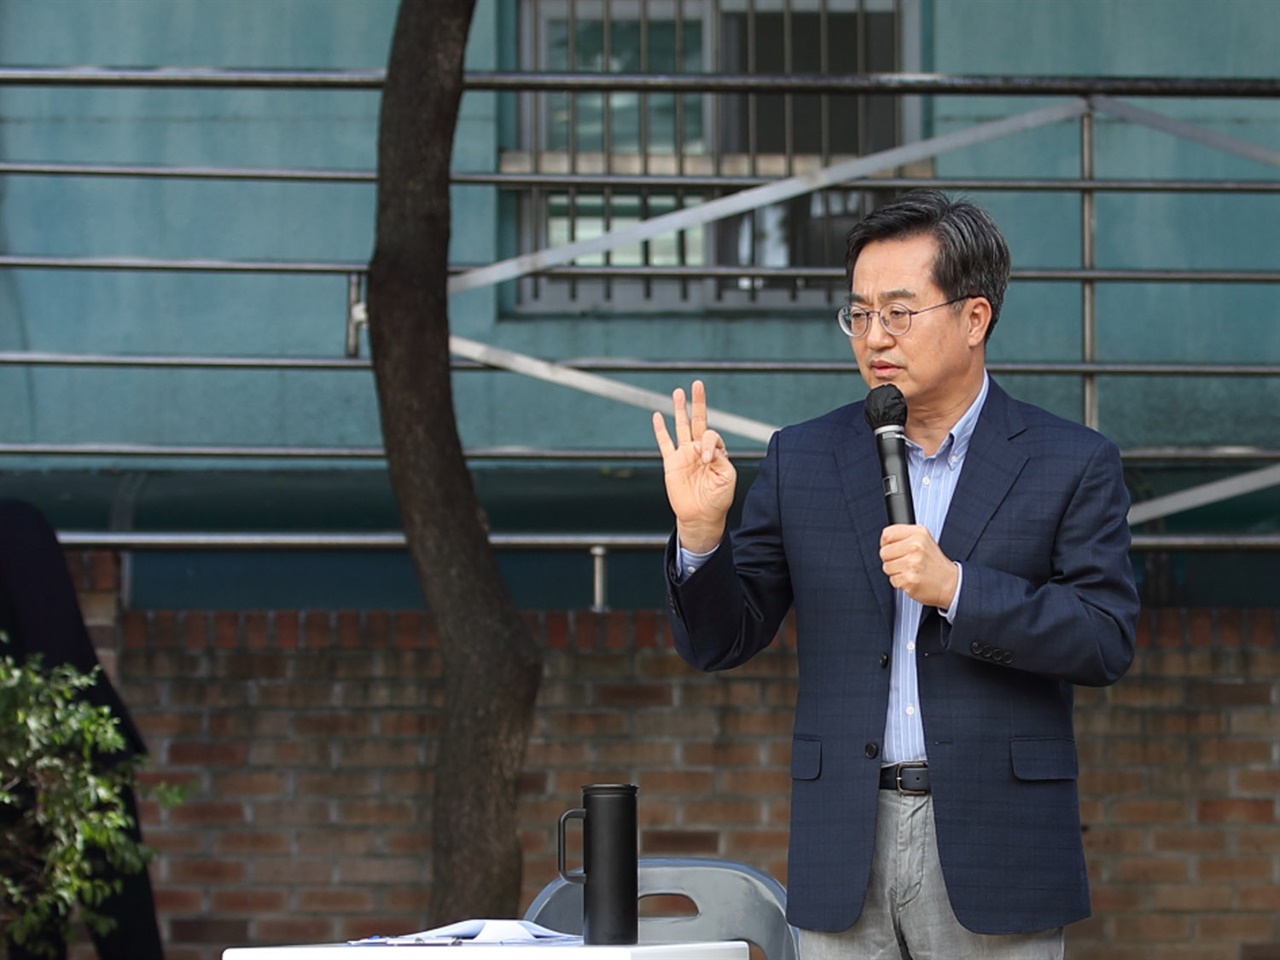 On the afternoon of the 27th, the 'The 1st Gyeonggi-do City-Gun Joint Town Hall Meeting Face-to-face Talk' held at Bamdongsan Park, Anyang 4-dong, Anyang-si, Gyeonggi-do